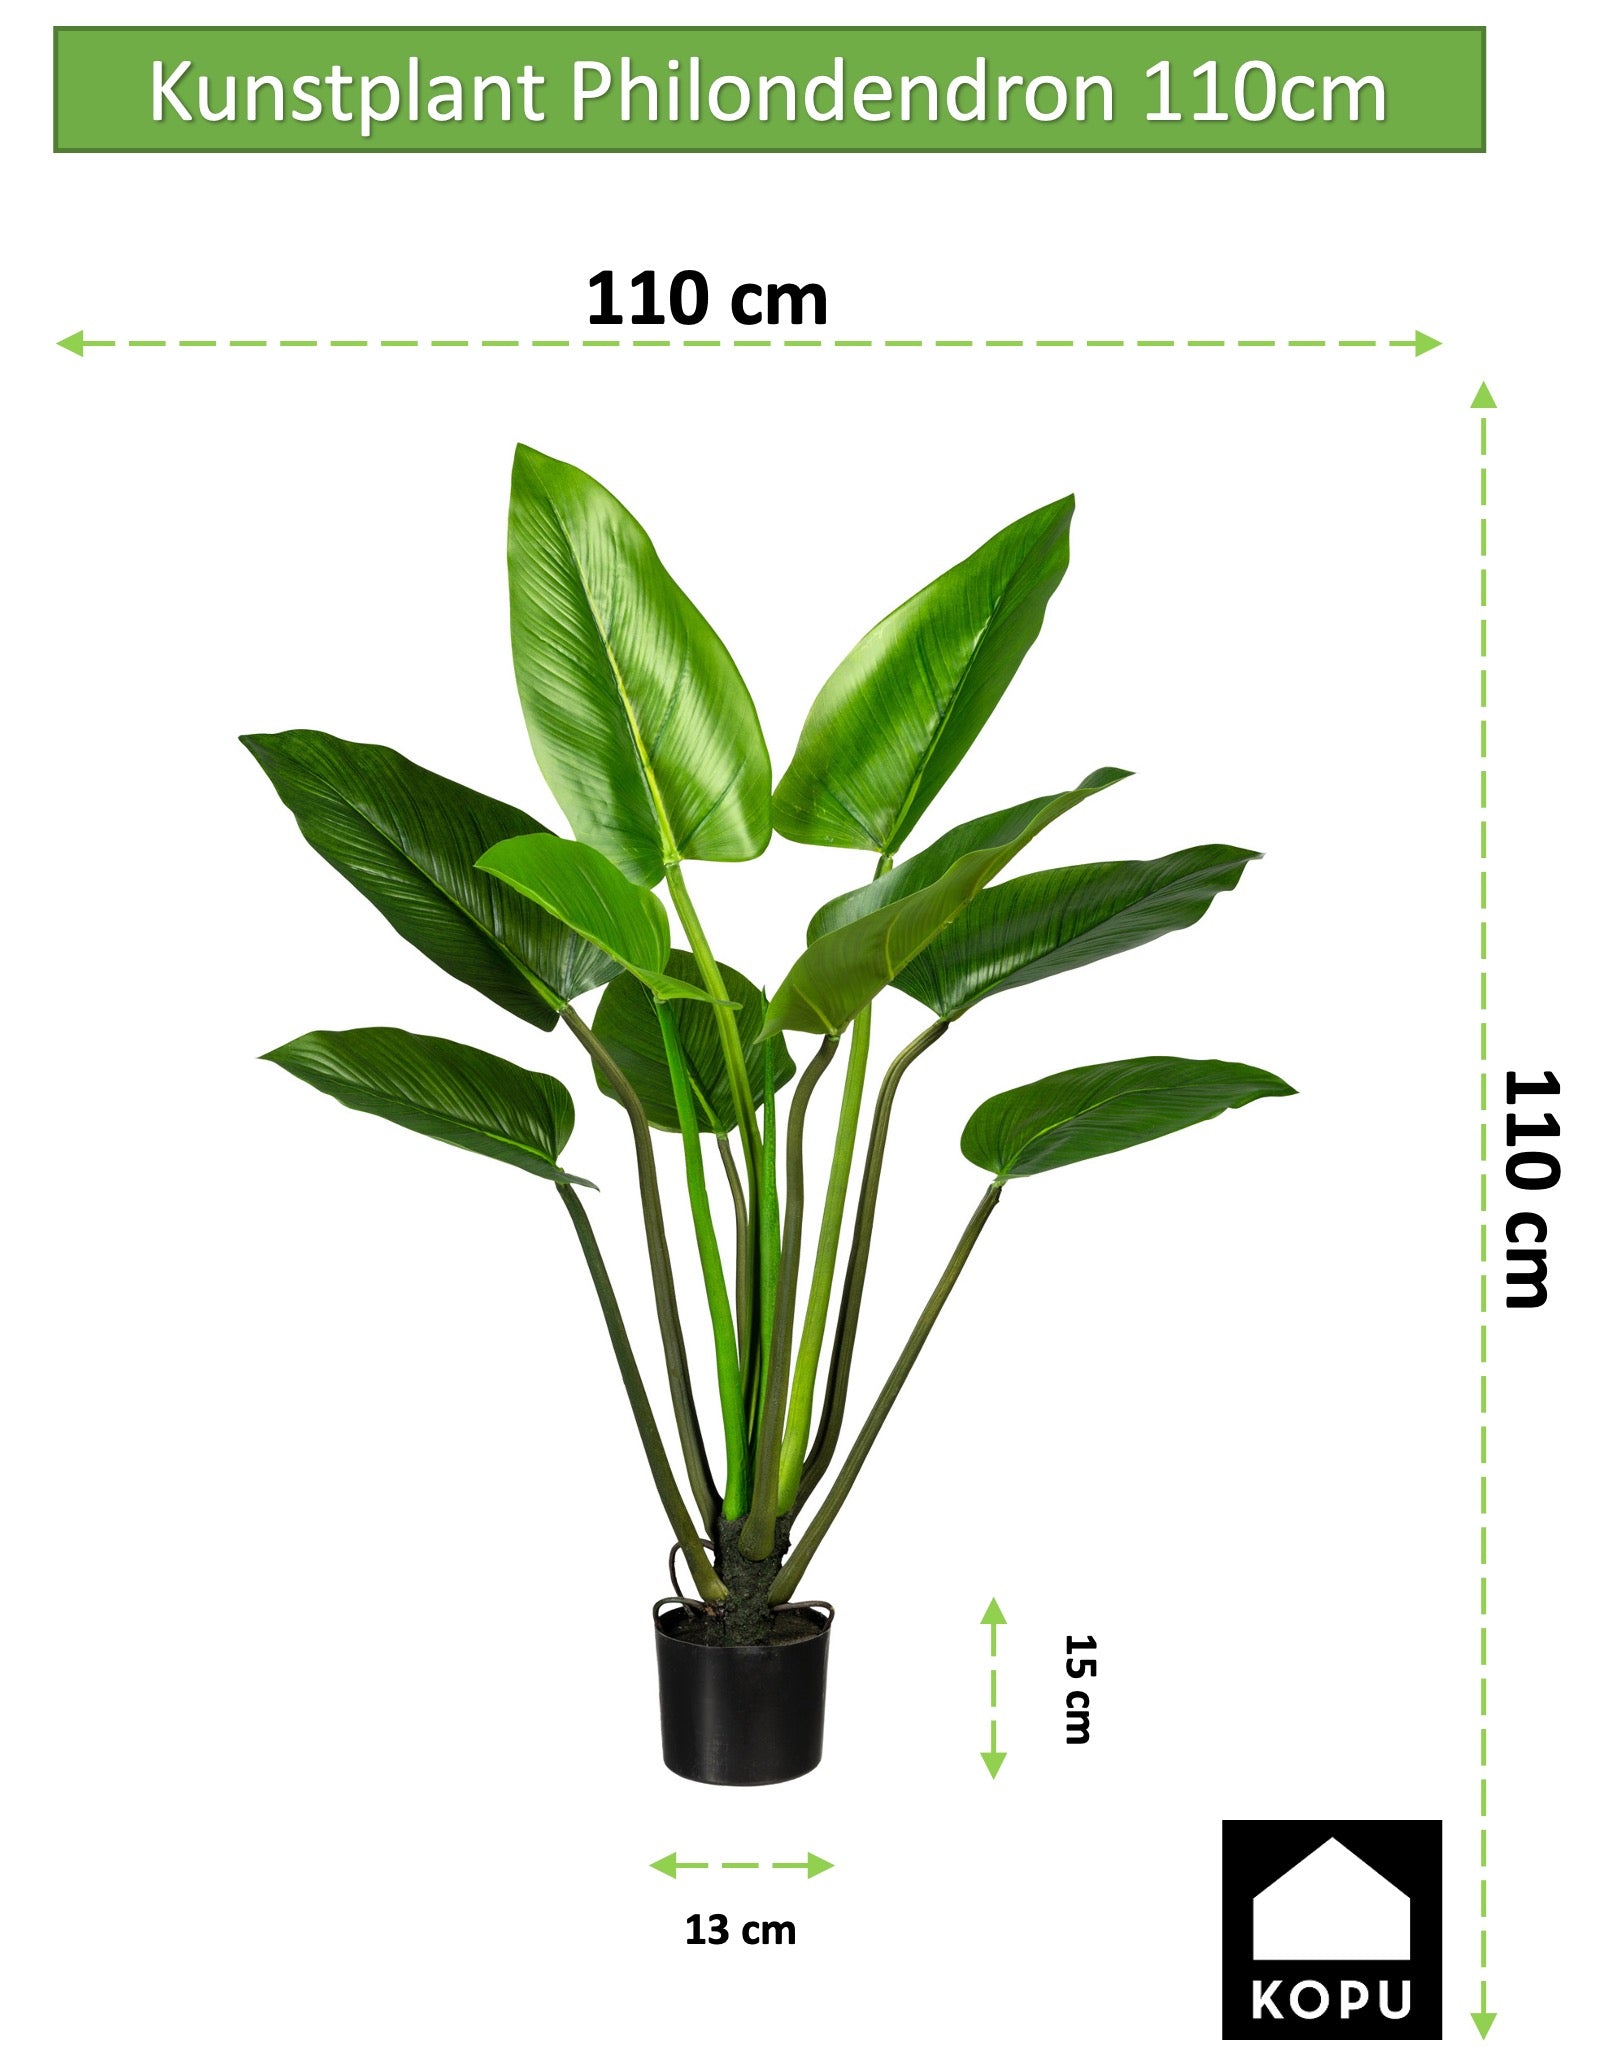 Kopu® Kunstplant Philodendron 110 cm - 9 bladeren - in zwarte pot